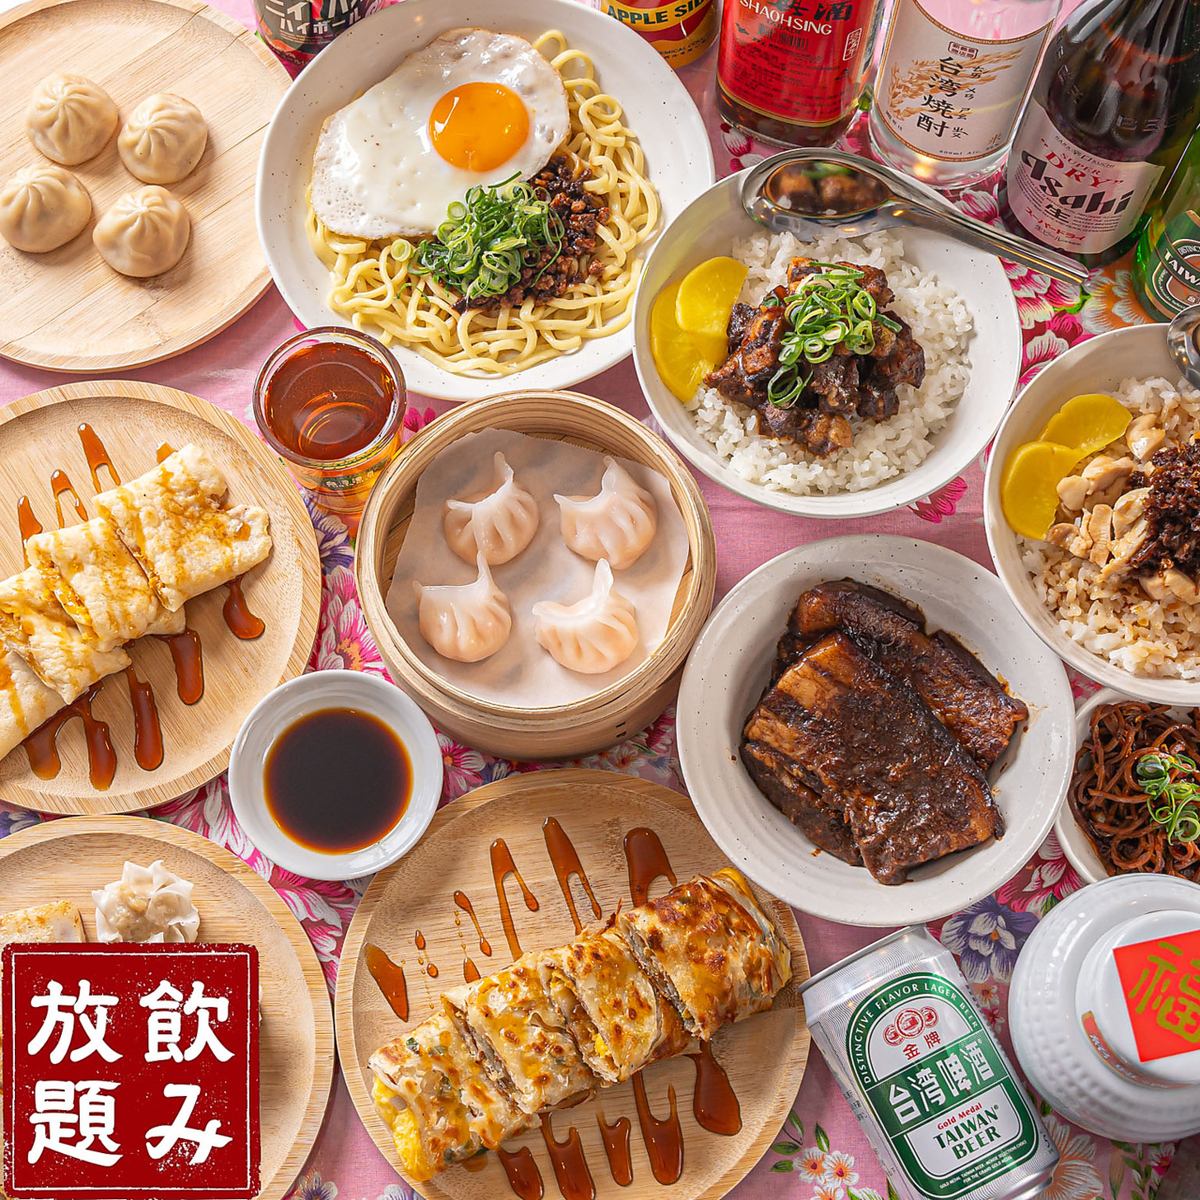 您可以在距离板宿仅几步之遥的商店享用主要的台湾美食。